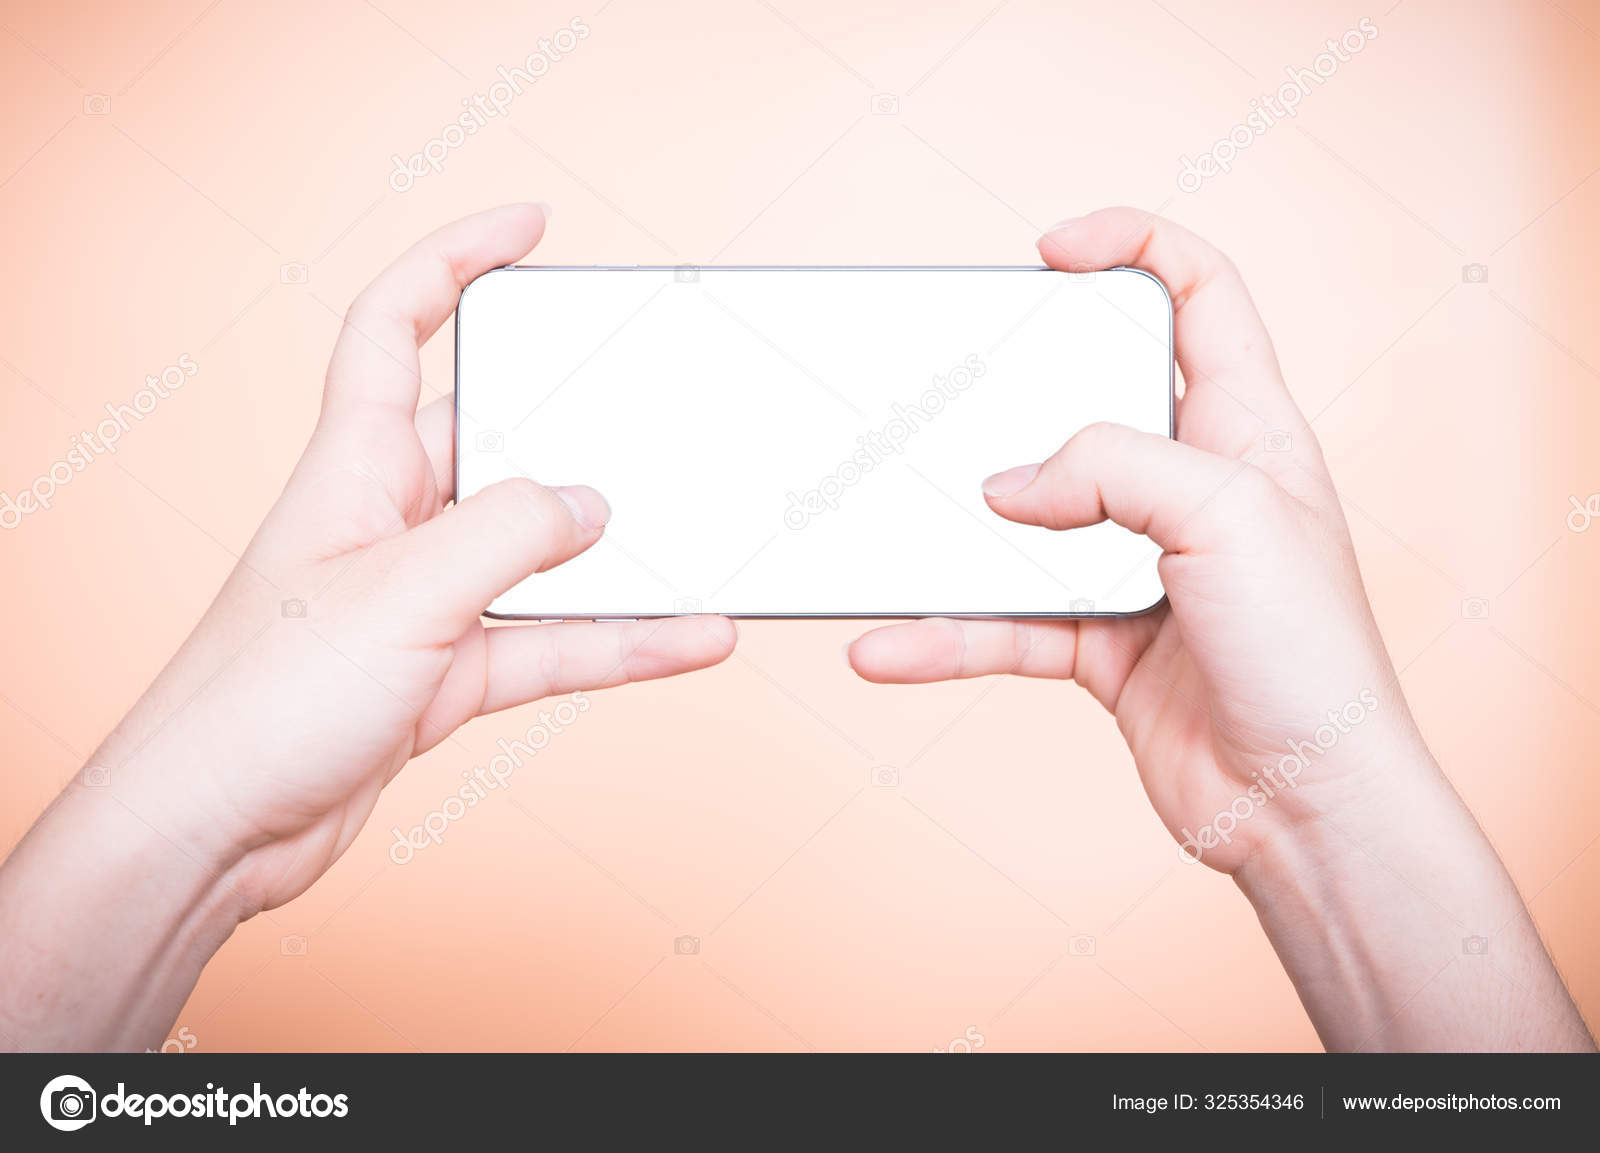 Mão segurando o celular parece jogar um jogo em branco na tela branca